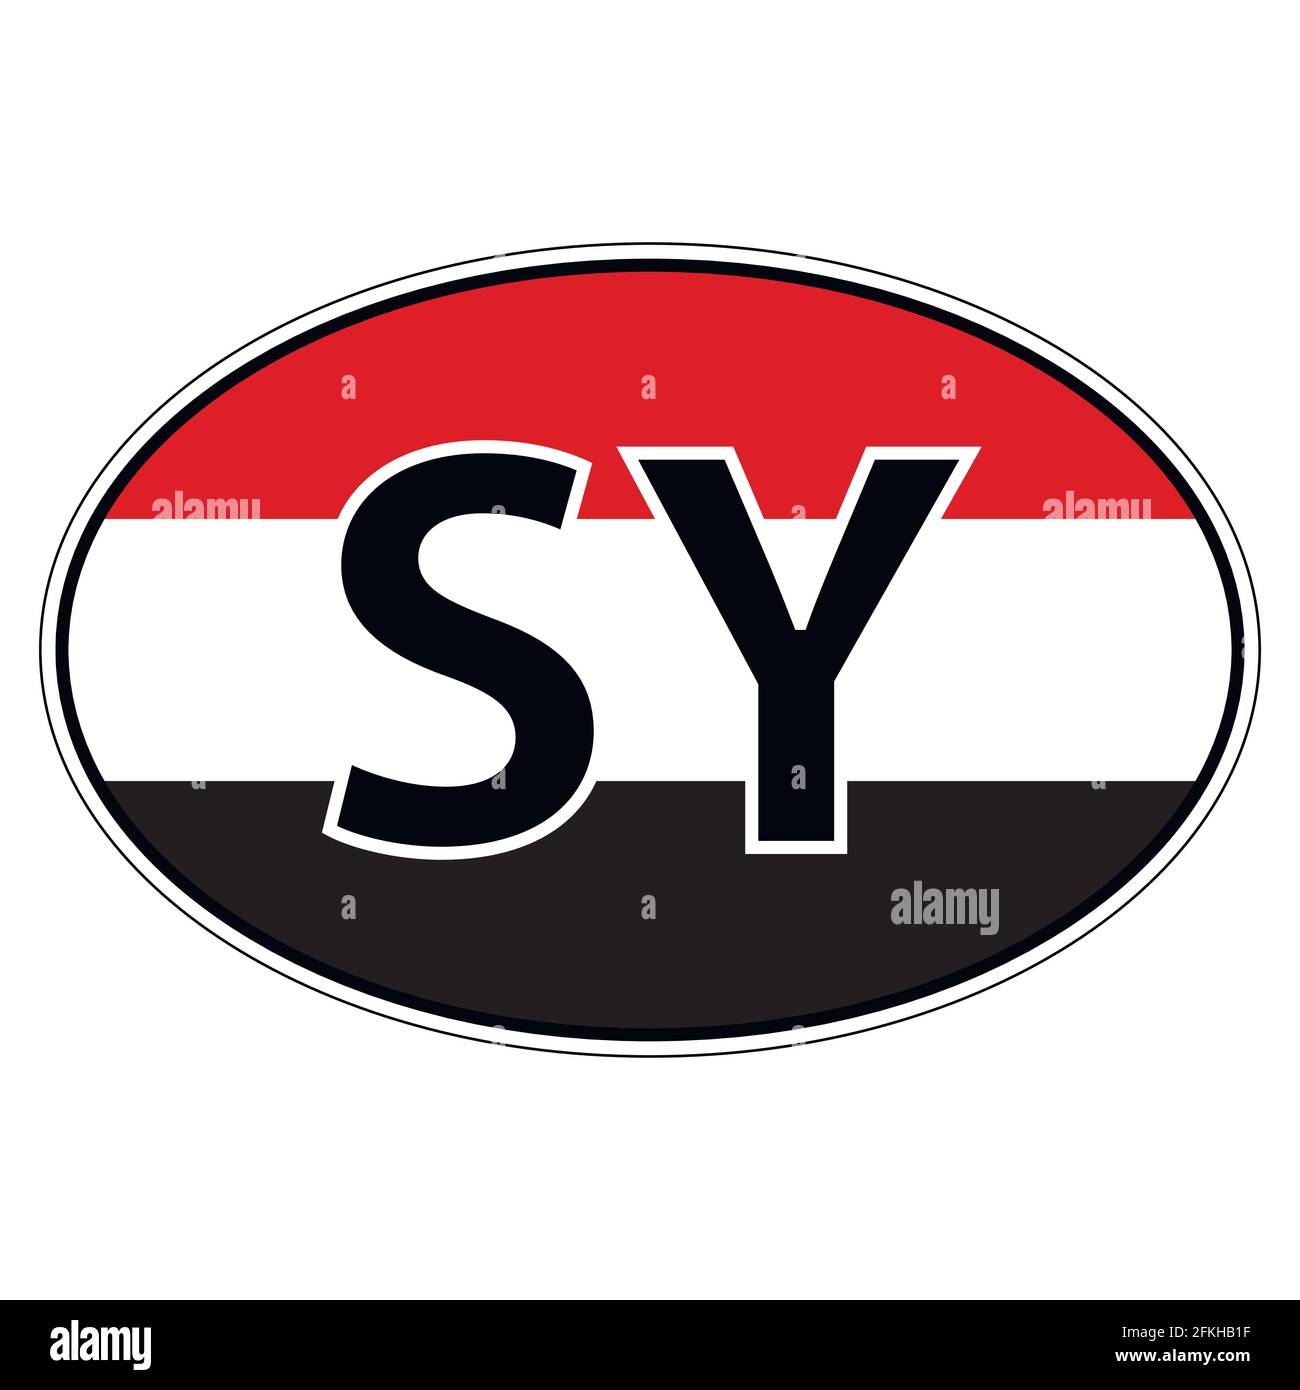 Sticker on car, flag Syria, Syrian Arab Republic Stock Vector